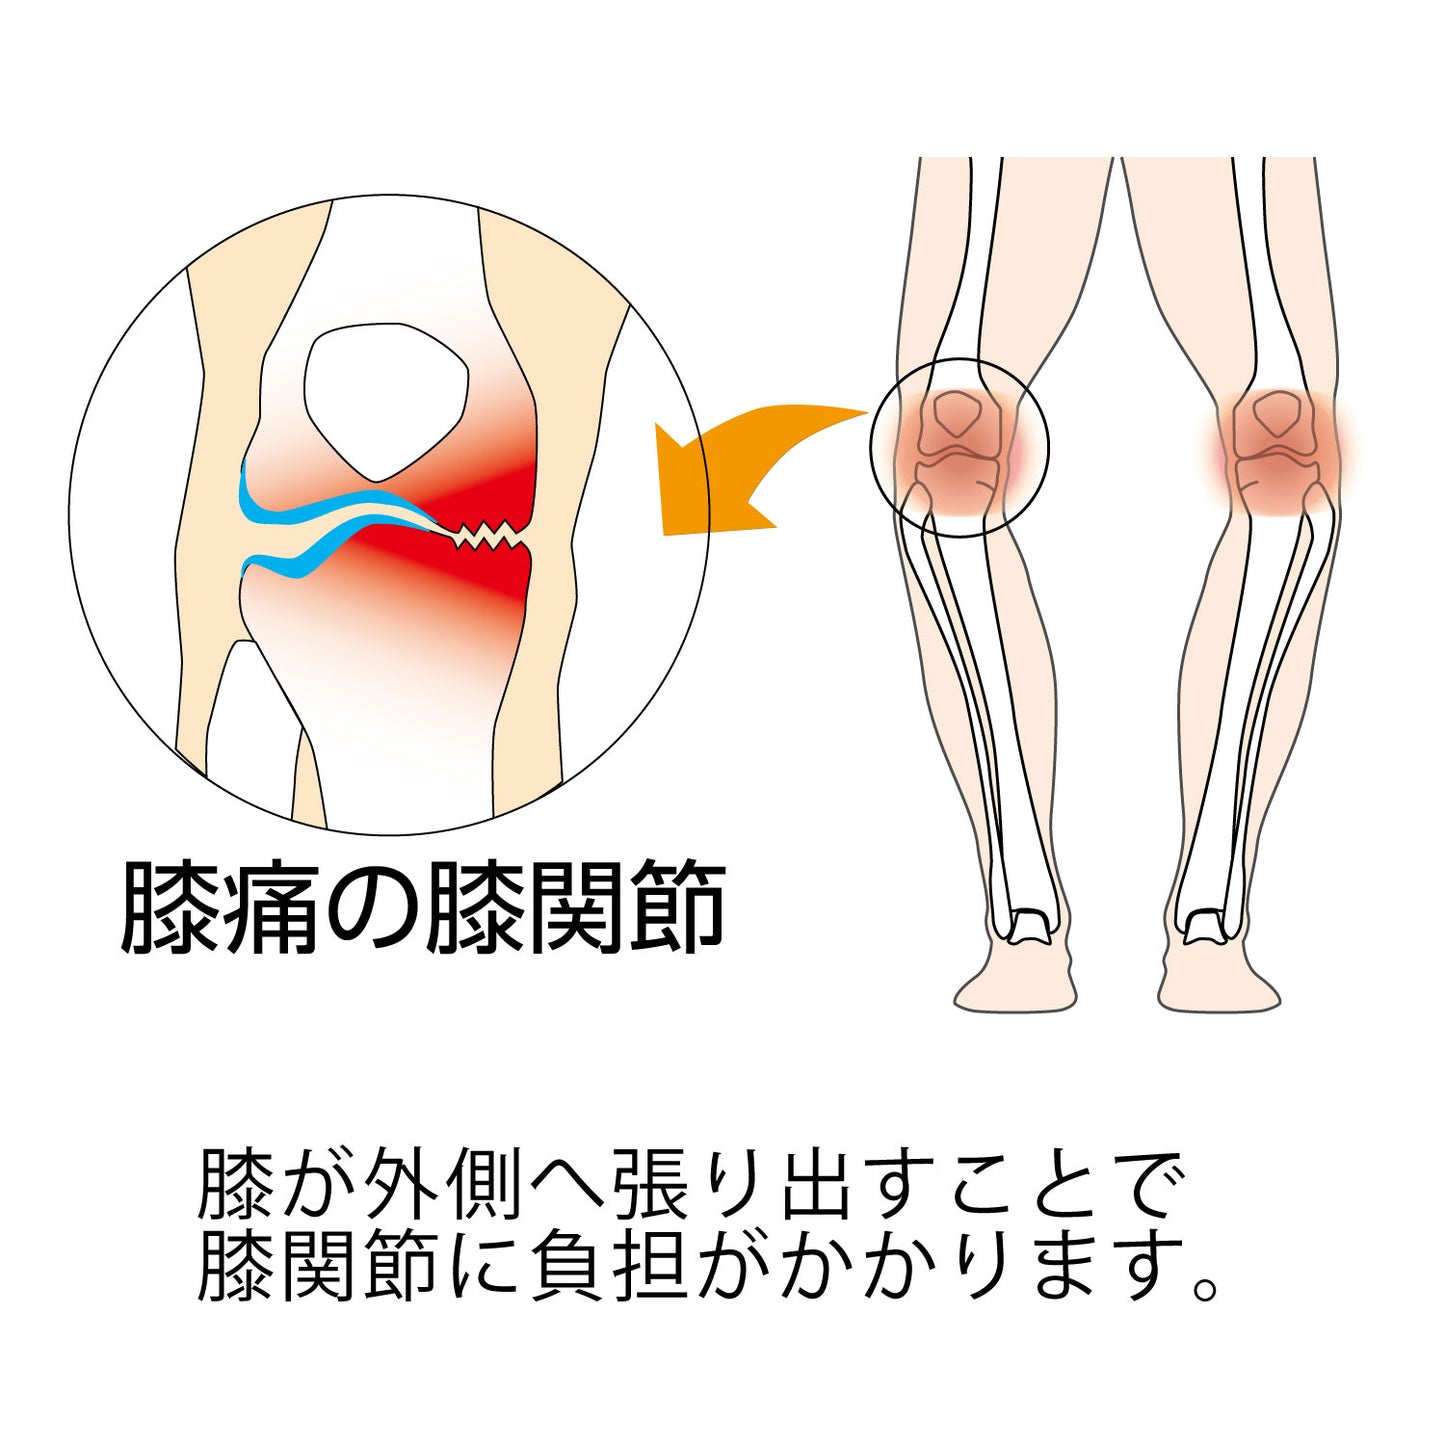 膝が外側に張り出すことで膝関節に負担がかかり痛みを生じます